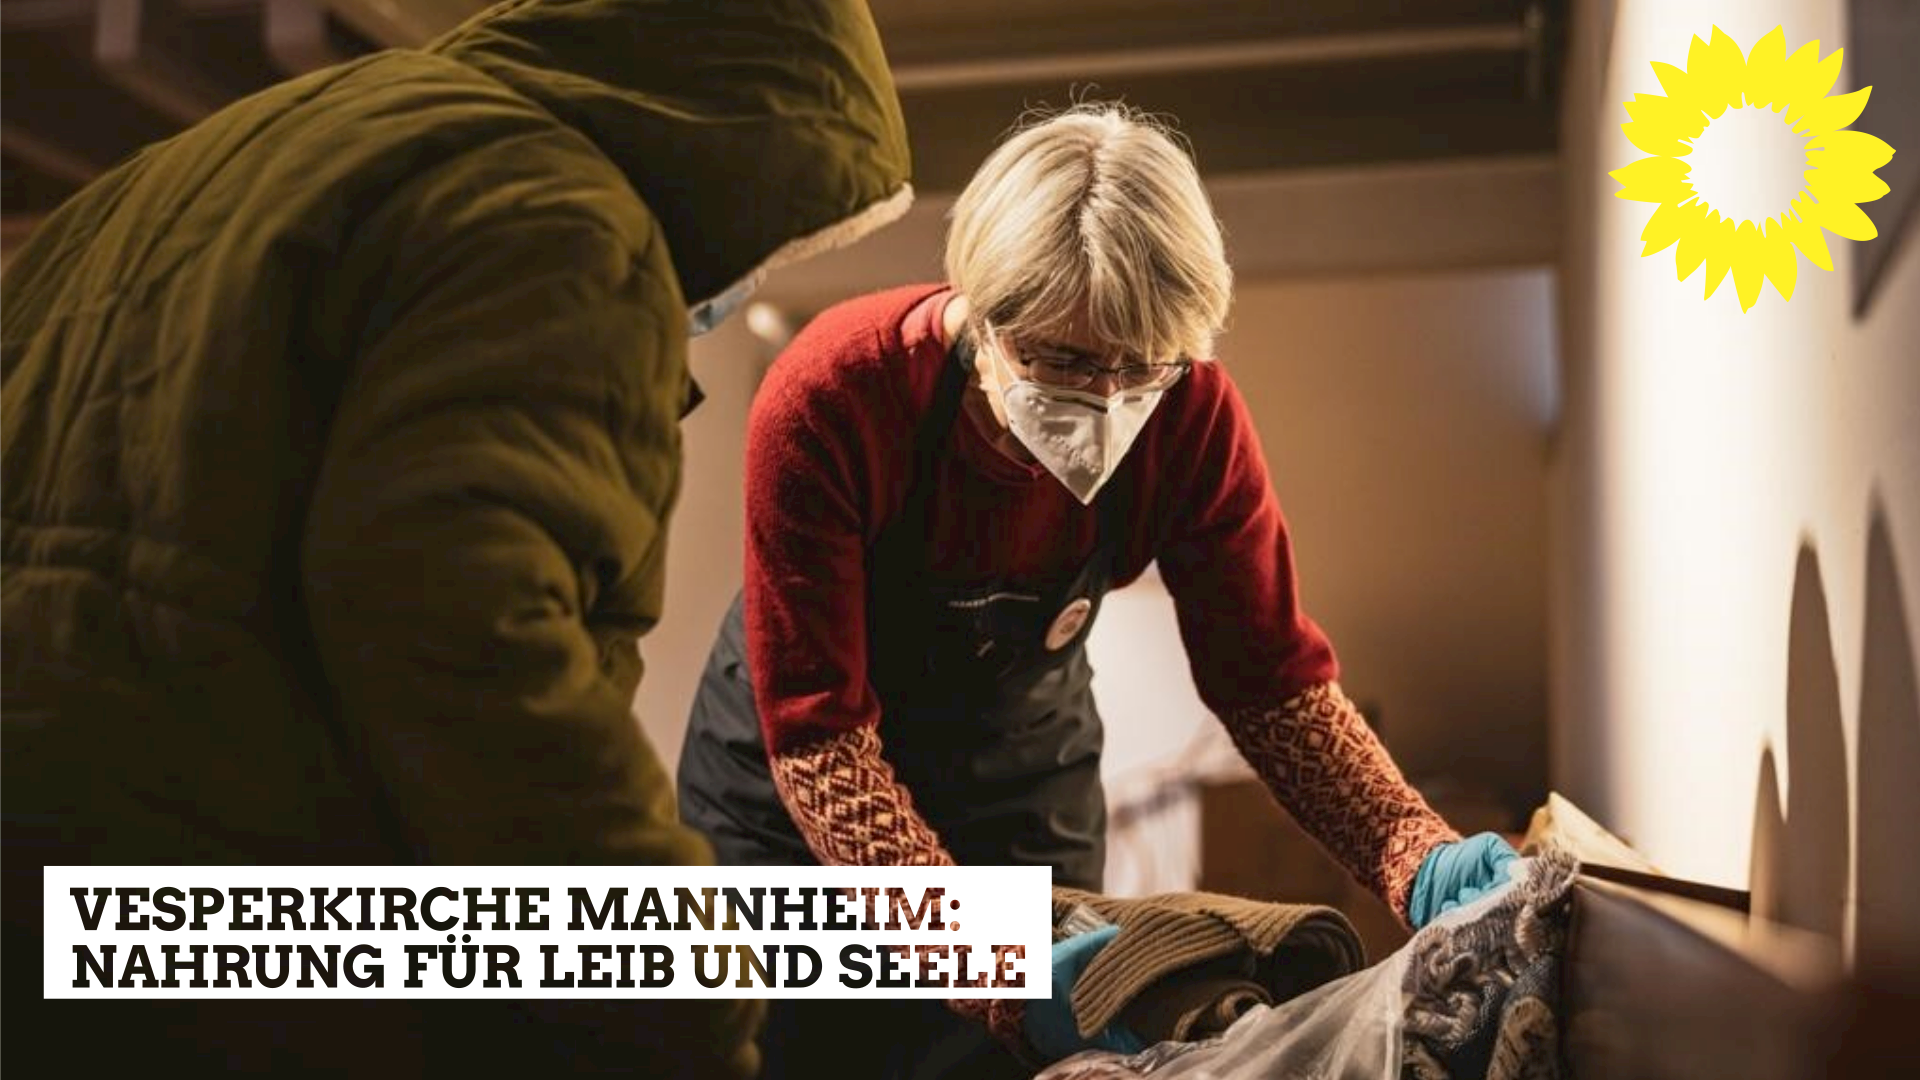 Vesperkirche Mannheim: Nahrung für Leib und Seele